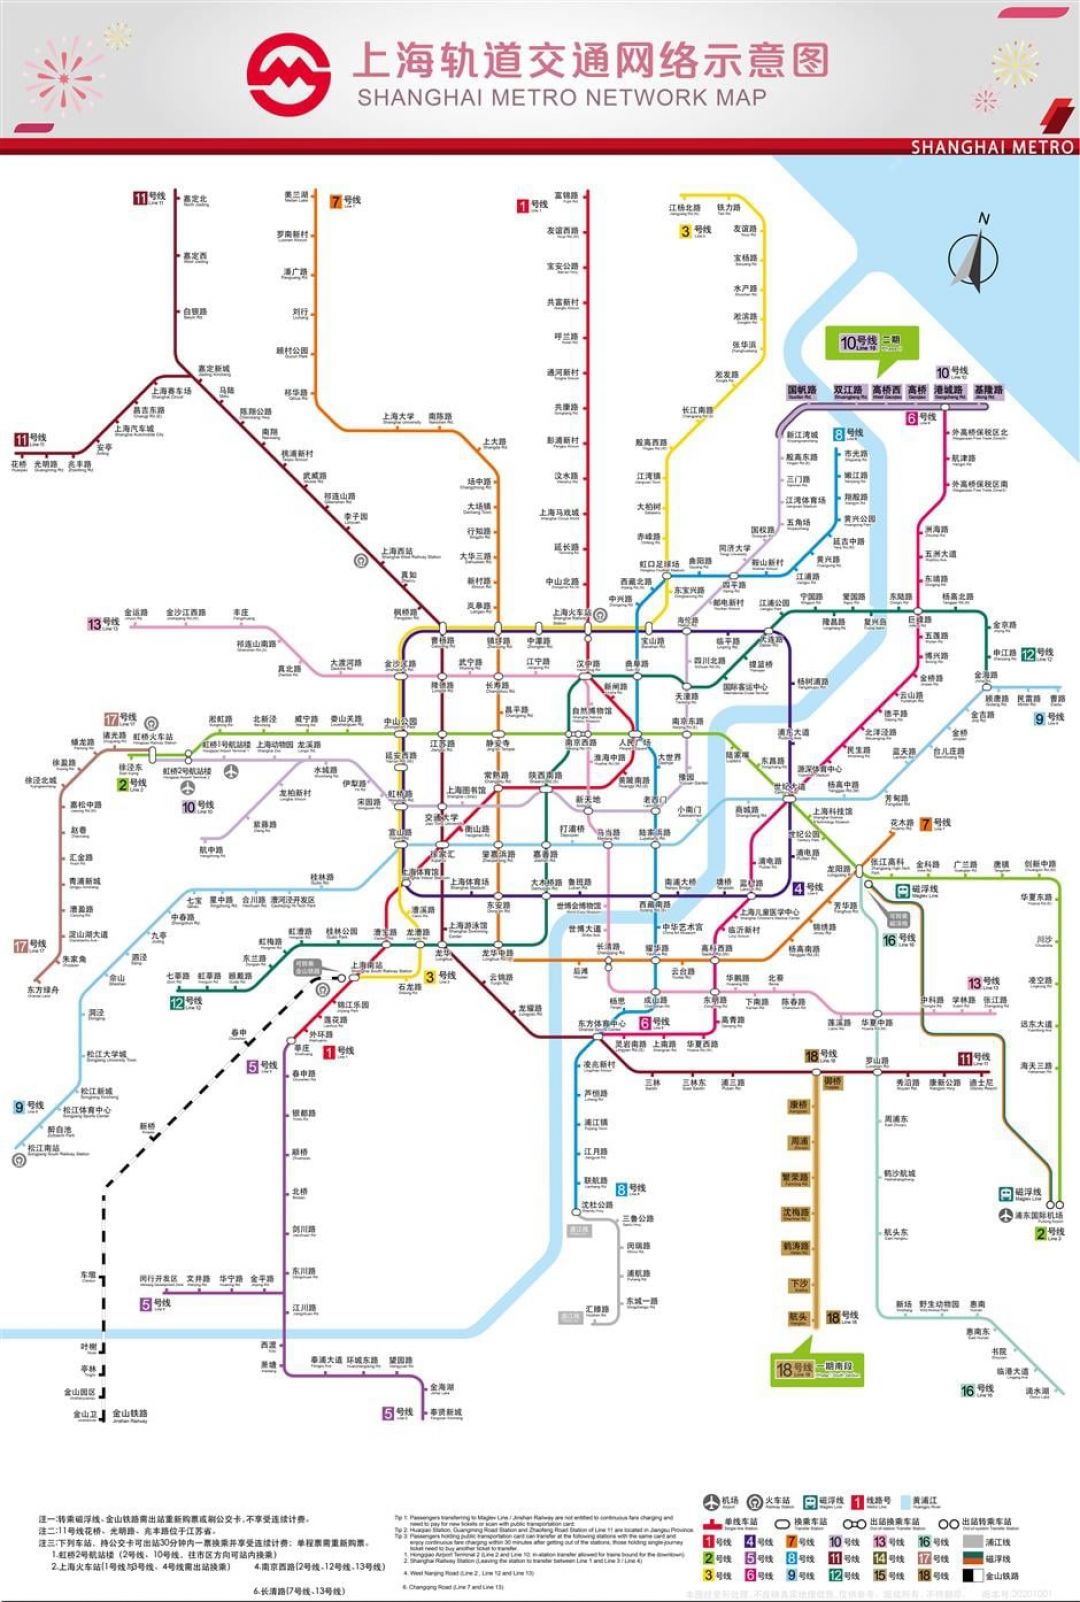 Informasi Seputar Metro di Shanghai Biaya, Tiket dan Peta Aplikasi-Image-2